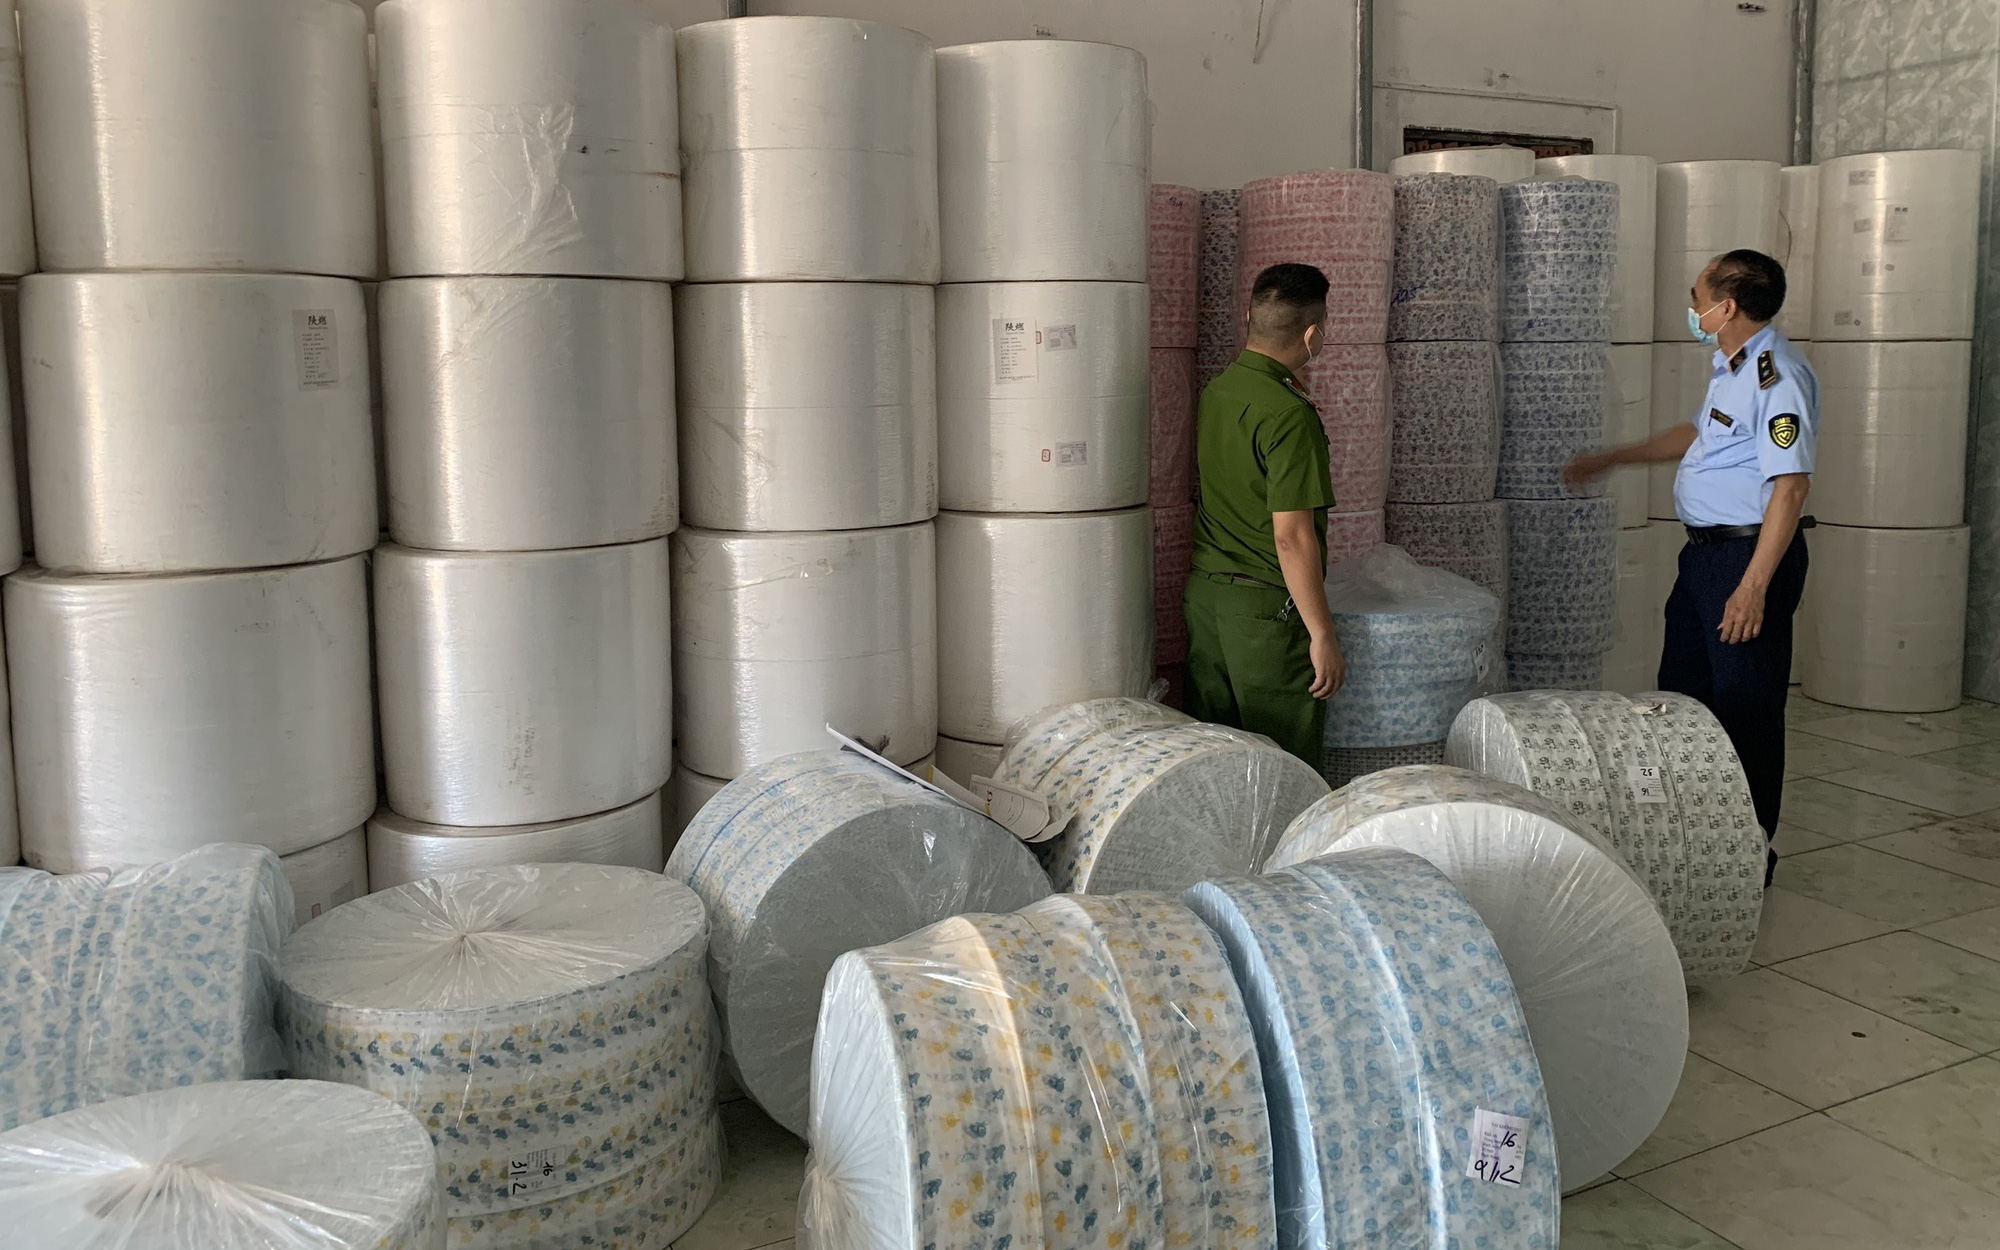 Tịch thu hàng tấn vải không dệt nhập lậu từ Trung Quốc dùng để may khẩu trang